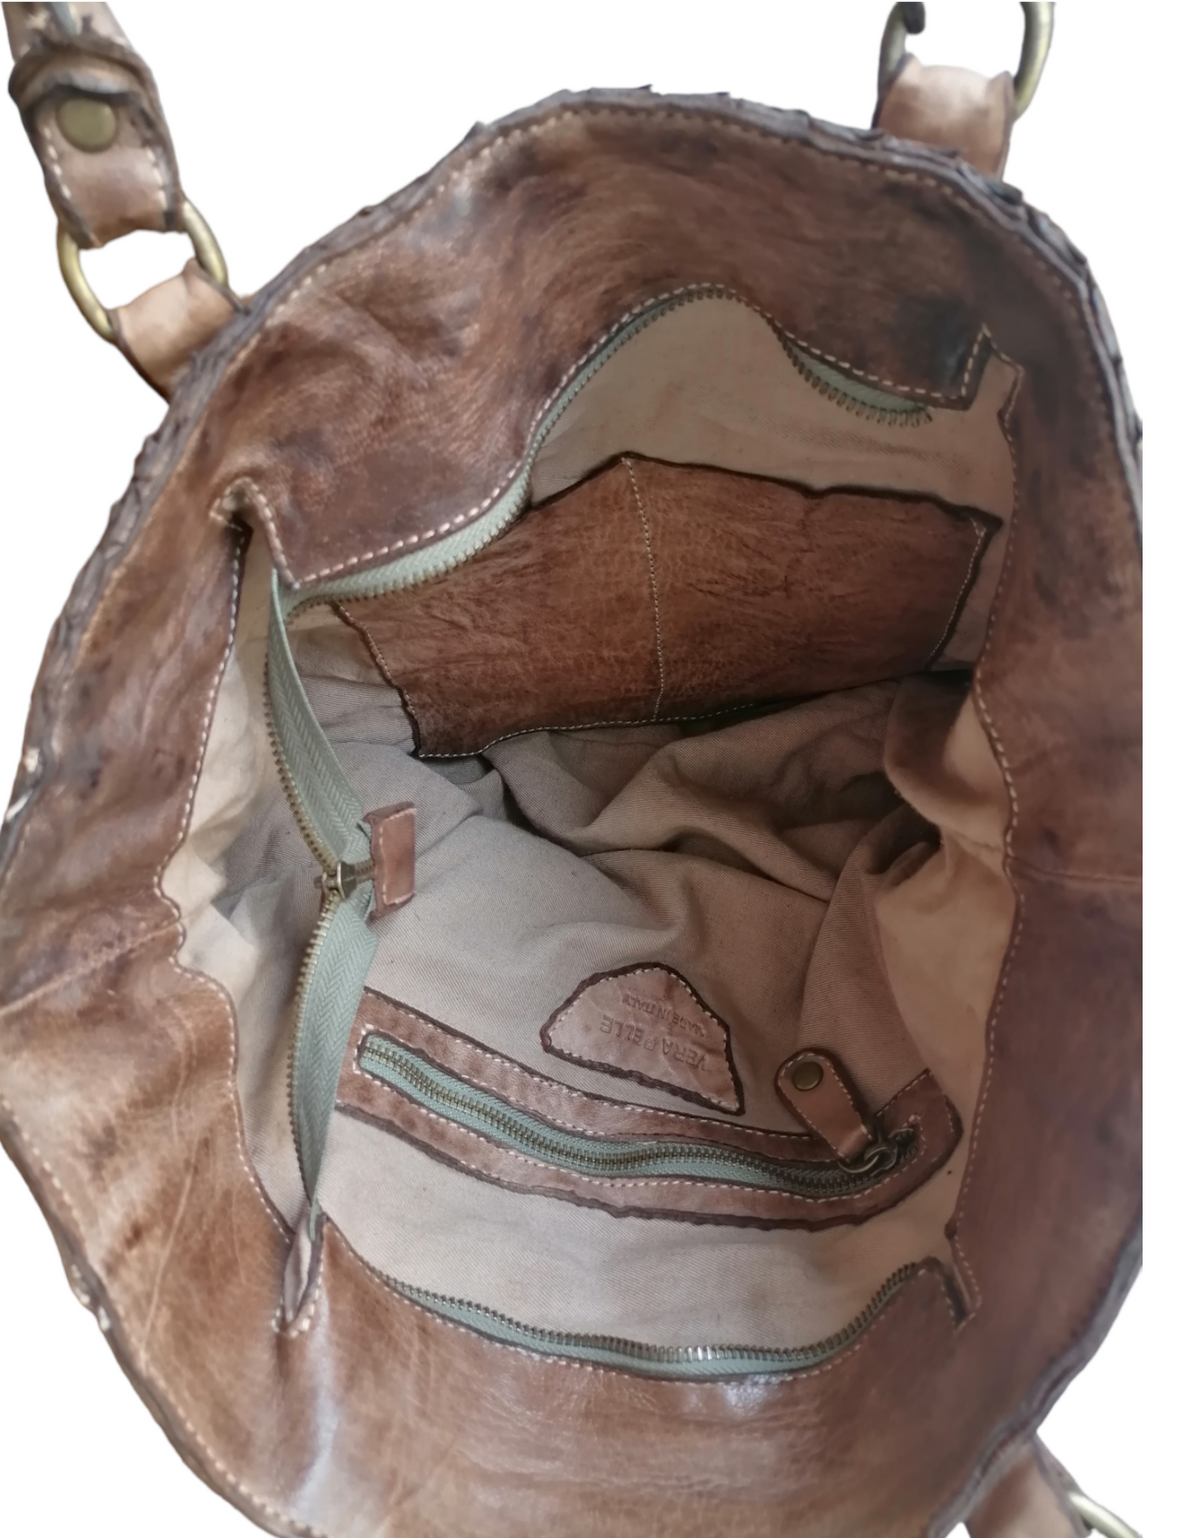 A Meta Prezzo! STOCK SS170 Tote Bag in Pelle Intrecciata Sauvage Stile Vintage